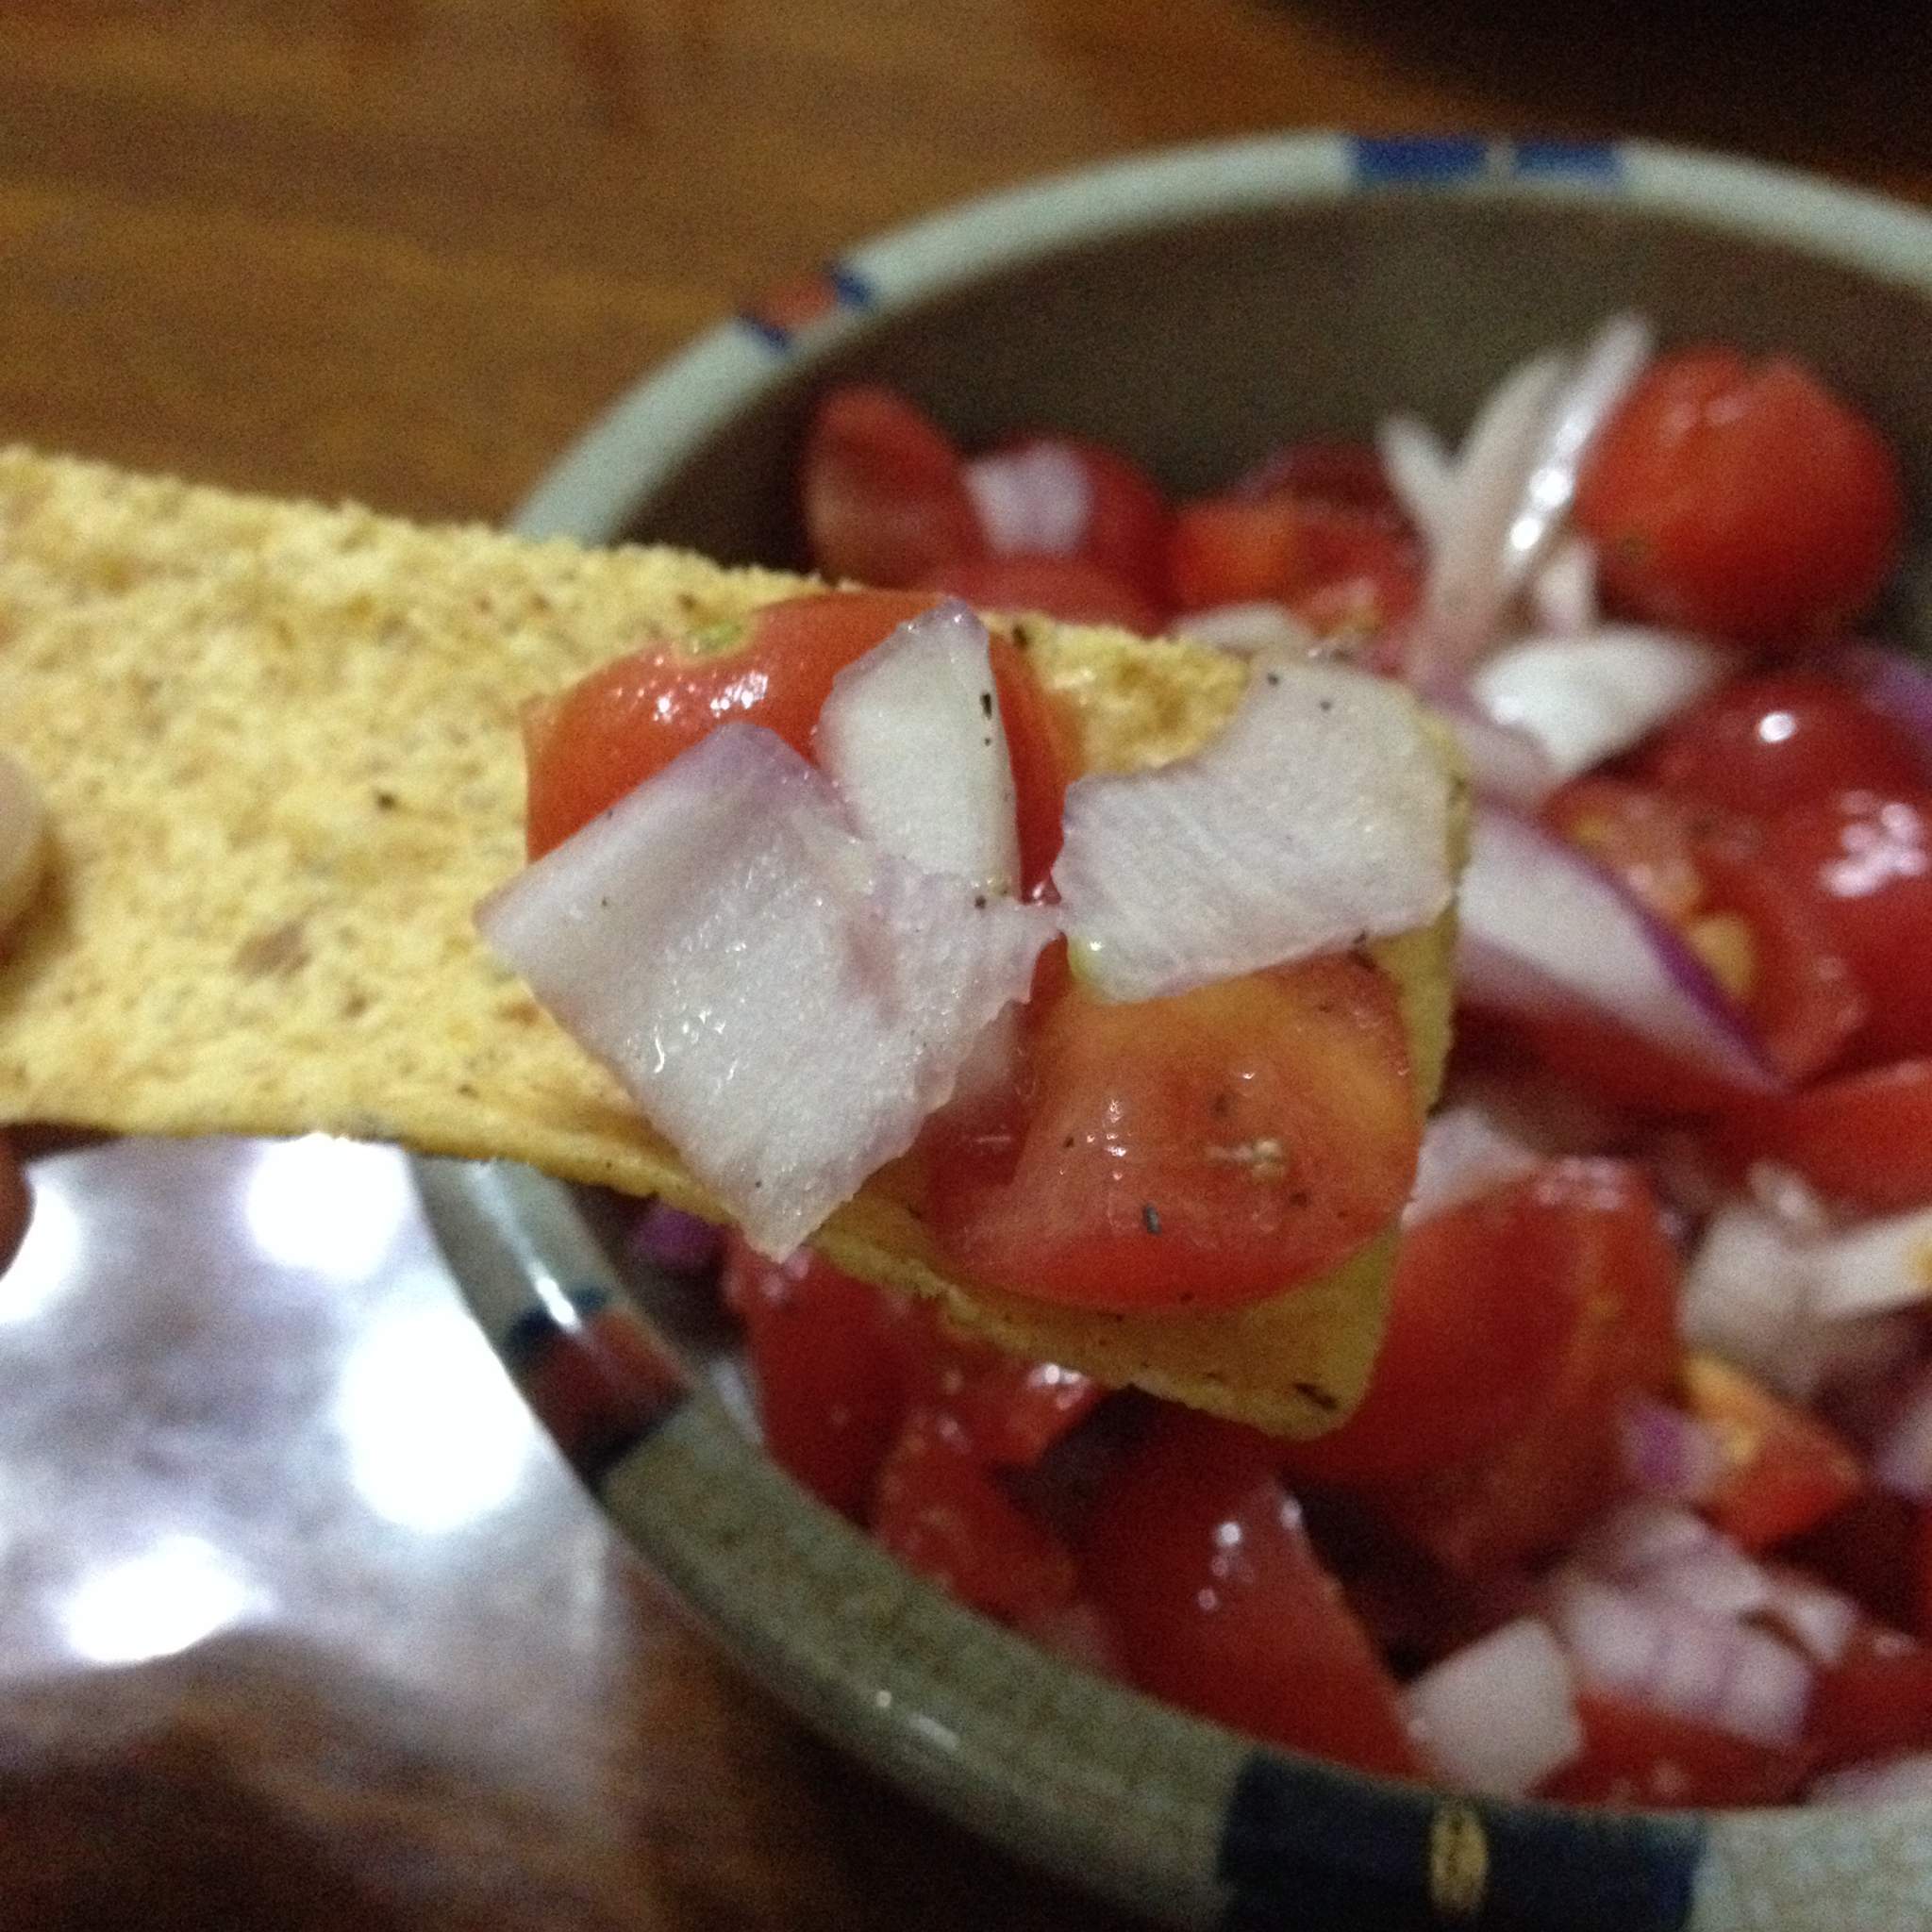 墨西哥风味番茄酱配玉米片